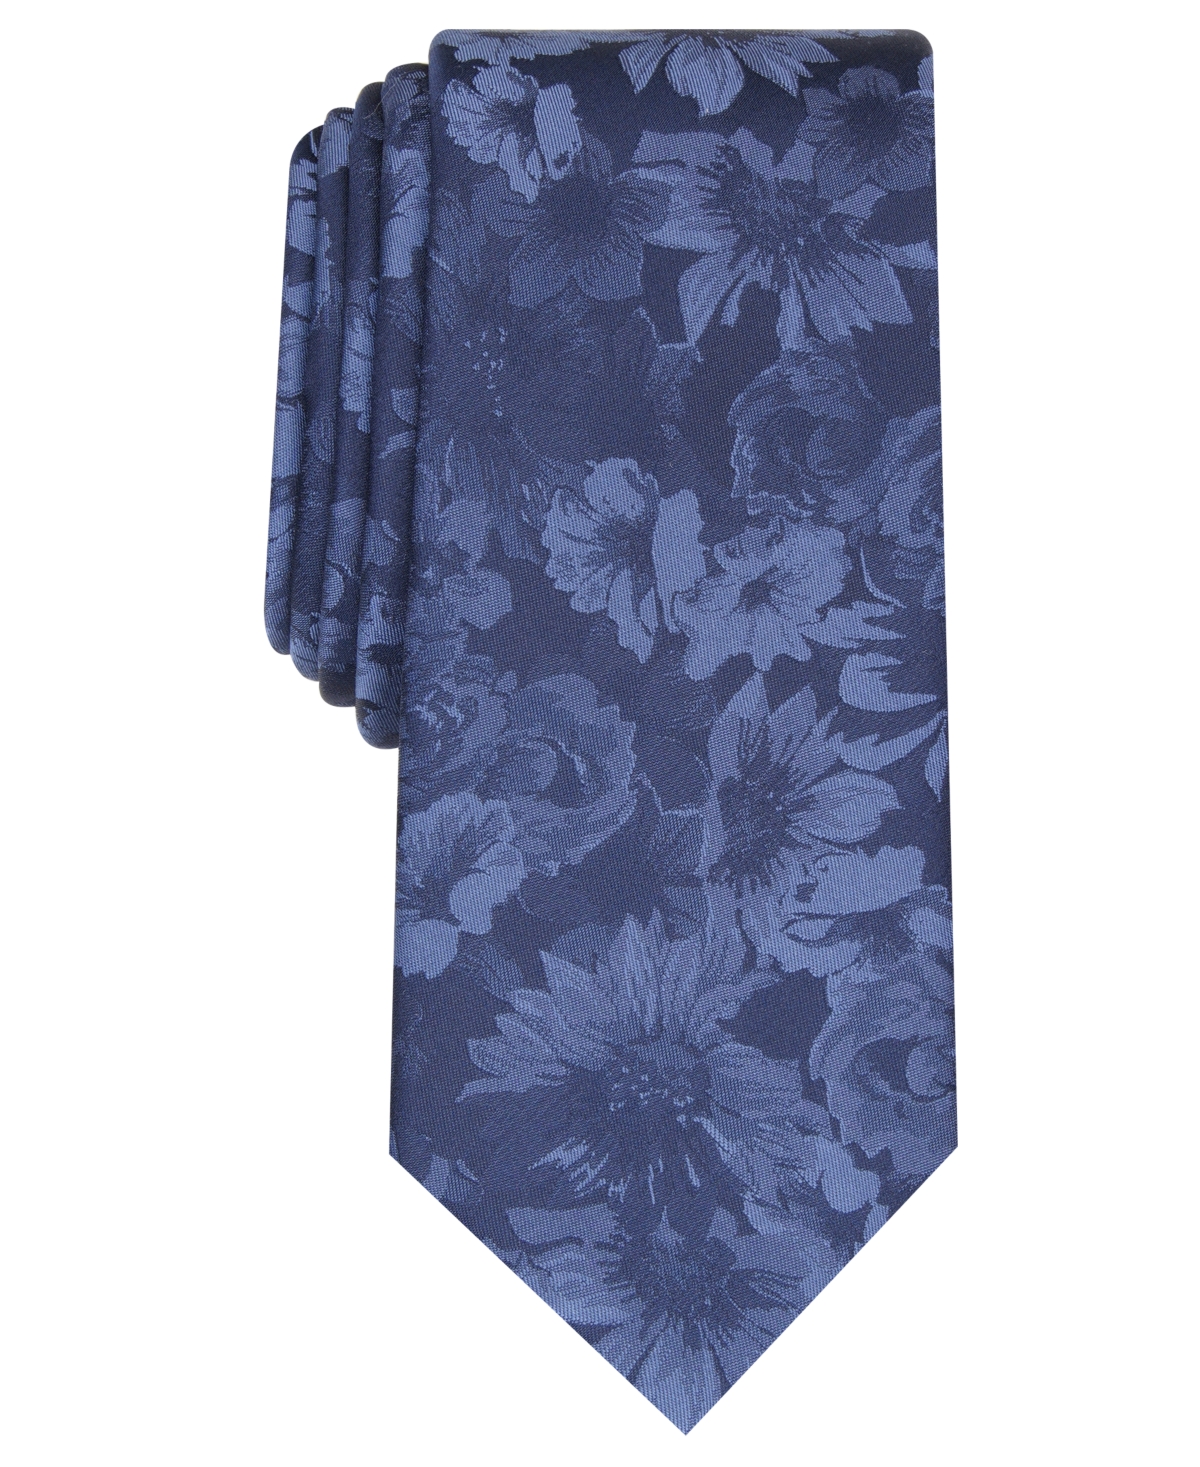 Men's Glacier Skinny Floral Tie, Created for Macy's - Navy